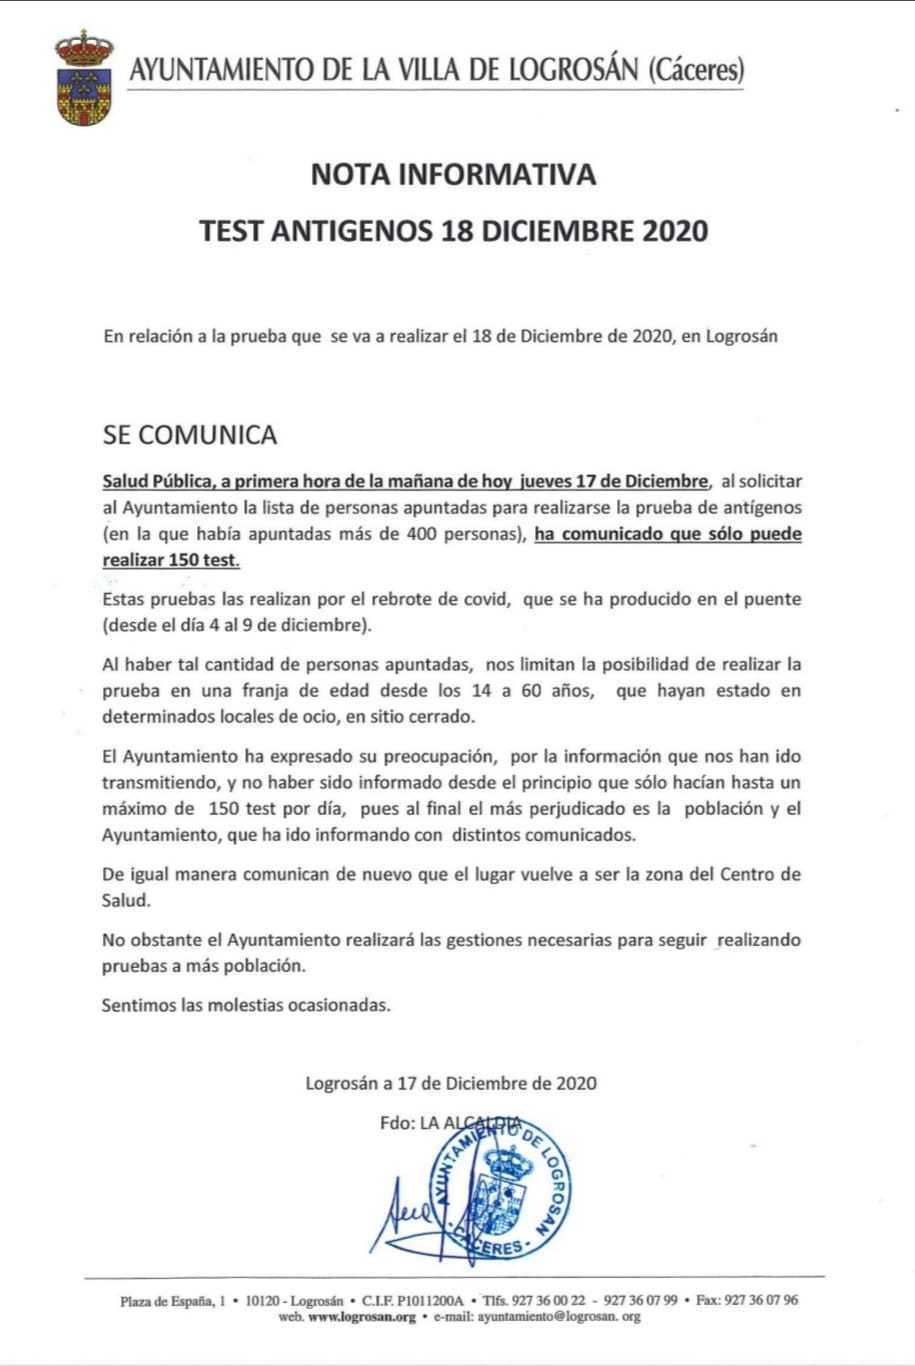 31 casos positivos activos de COVID-19 (diciembre 2020) - Logrosán (Cáceres) 2